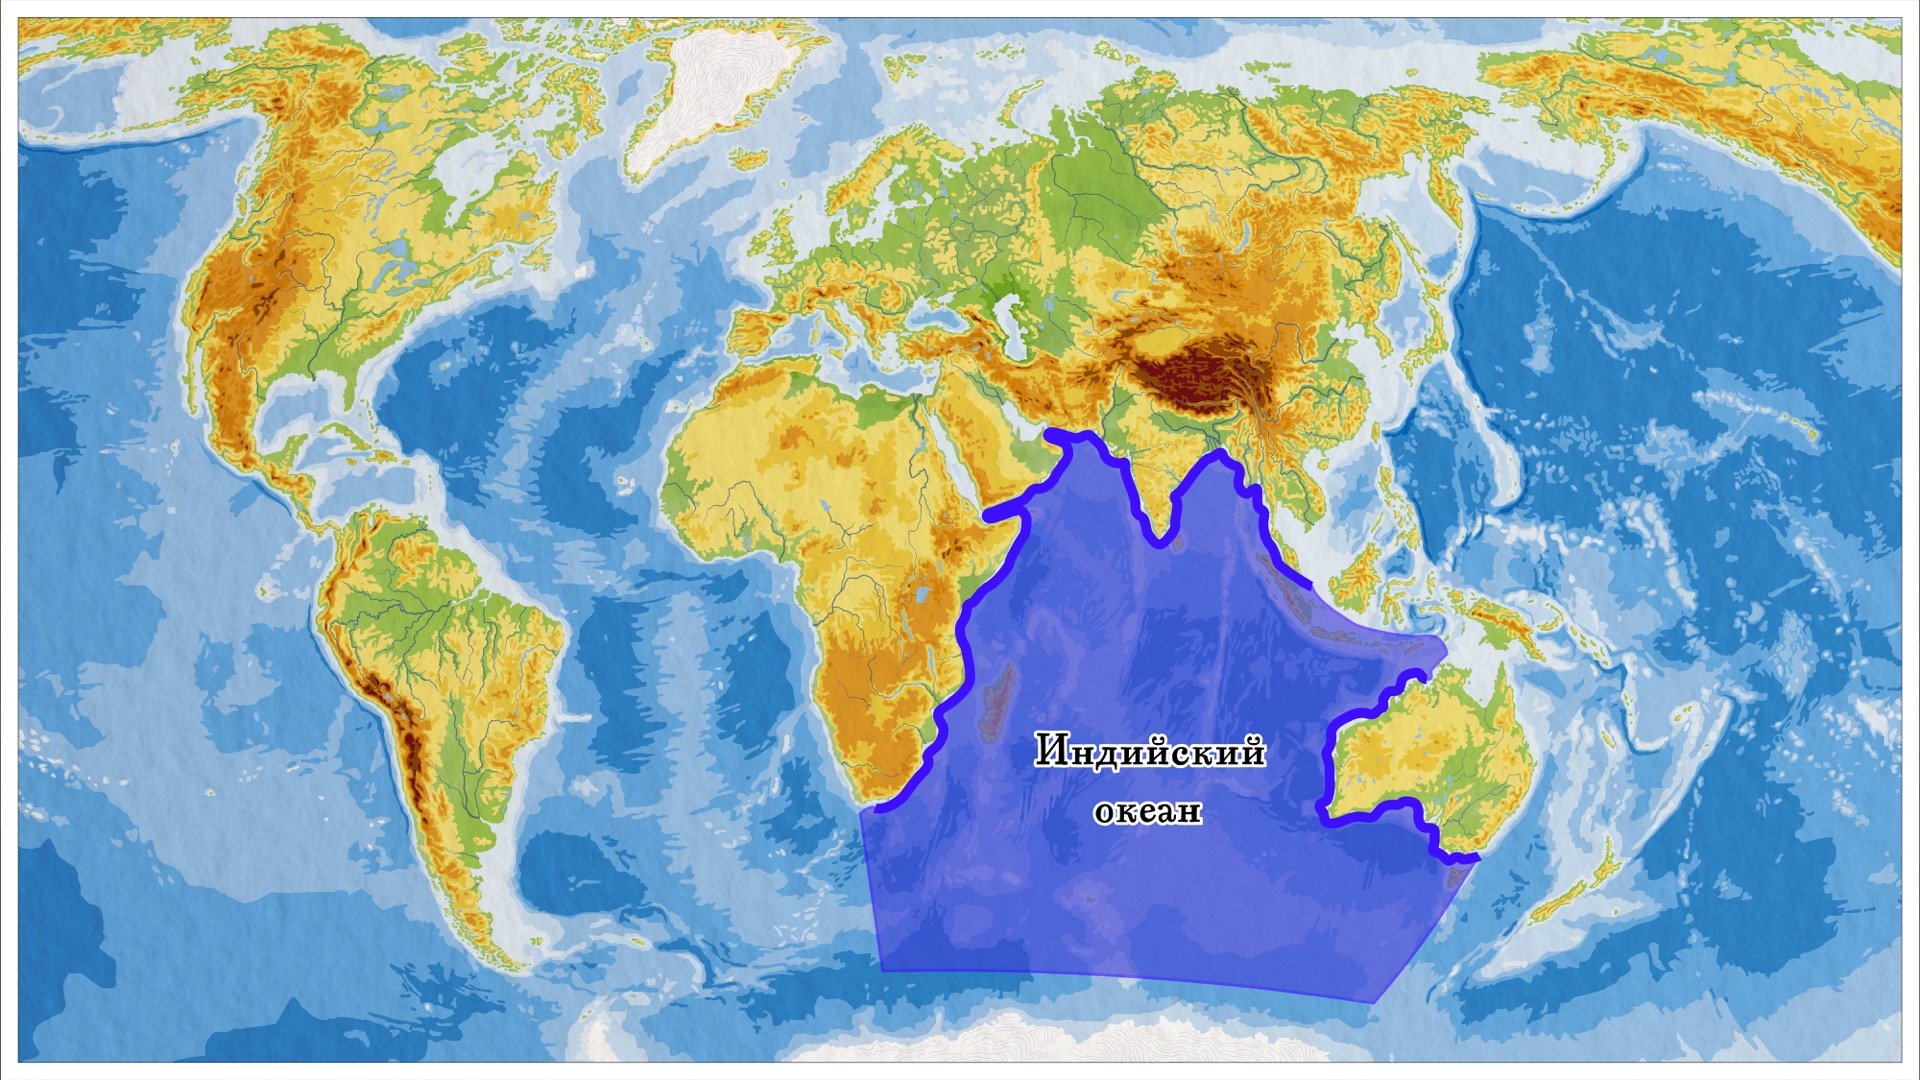 Океан между 2 материками. Границы индийского океана на карте. Индийский океан на карте. Индийский океан наикарте.